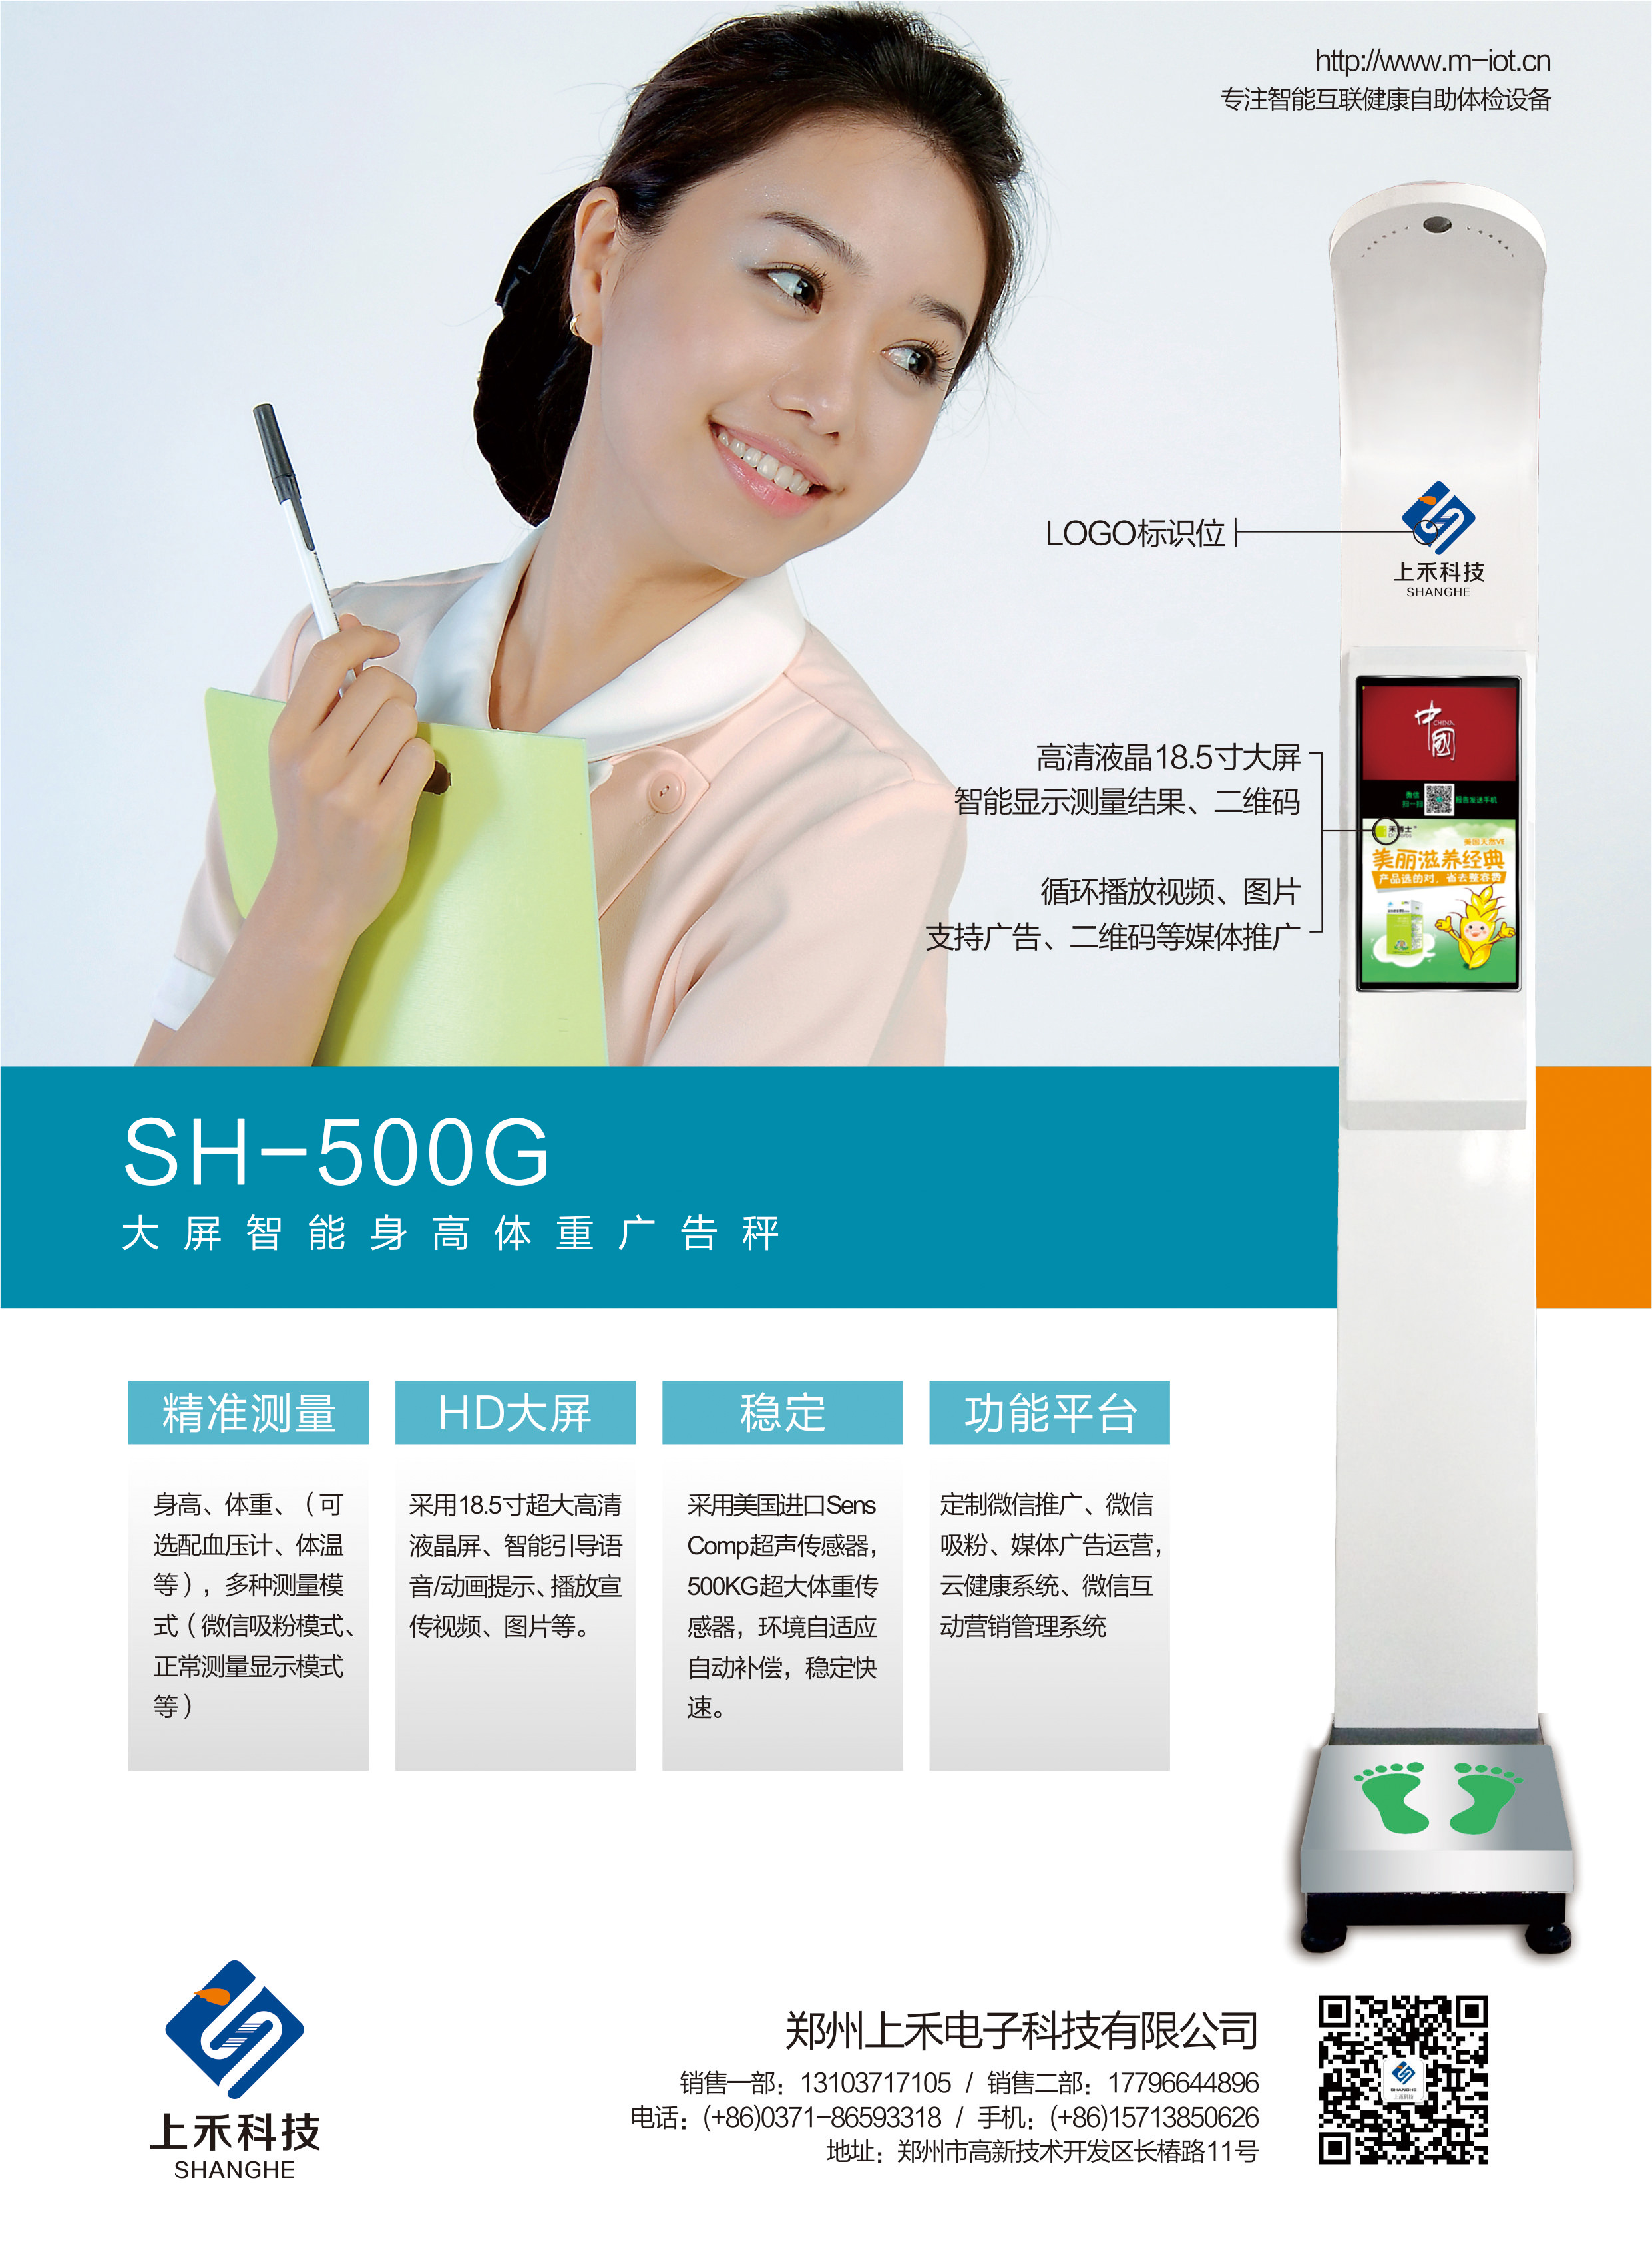 SH-500G大屏广告微信身高体重(BMI)一体机